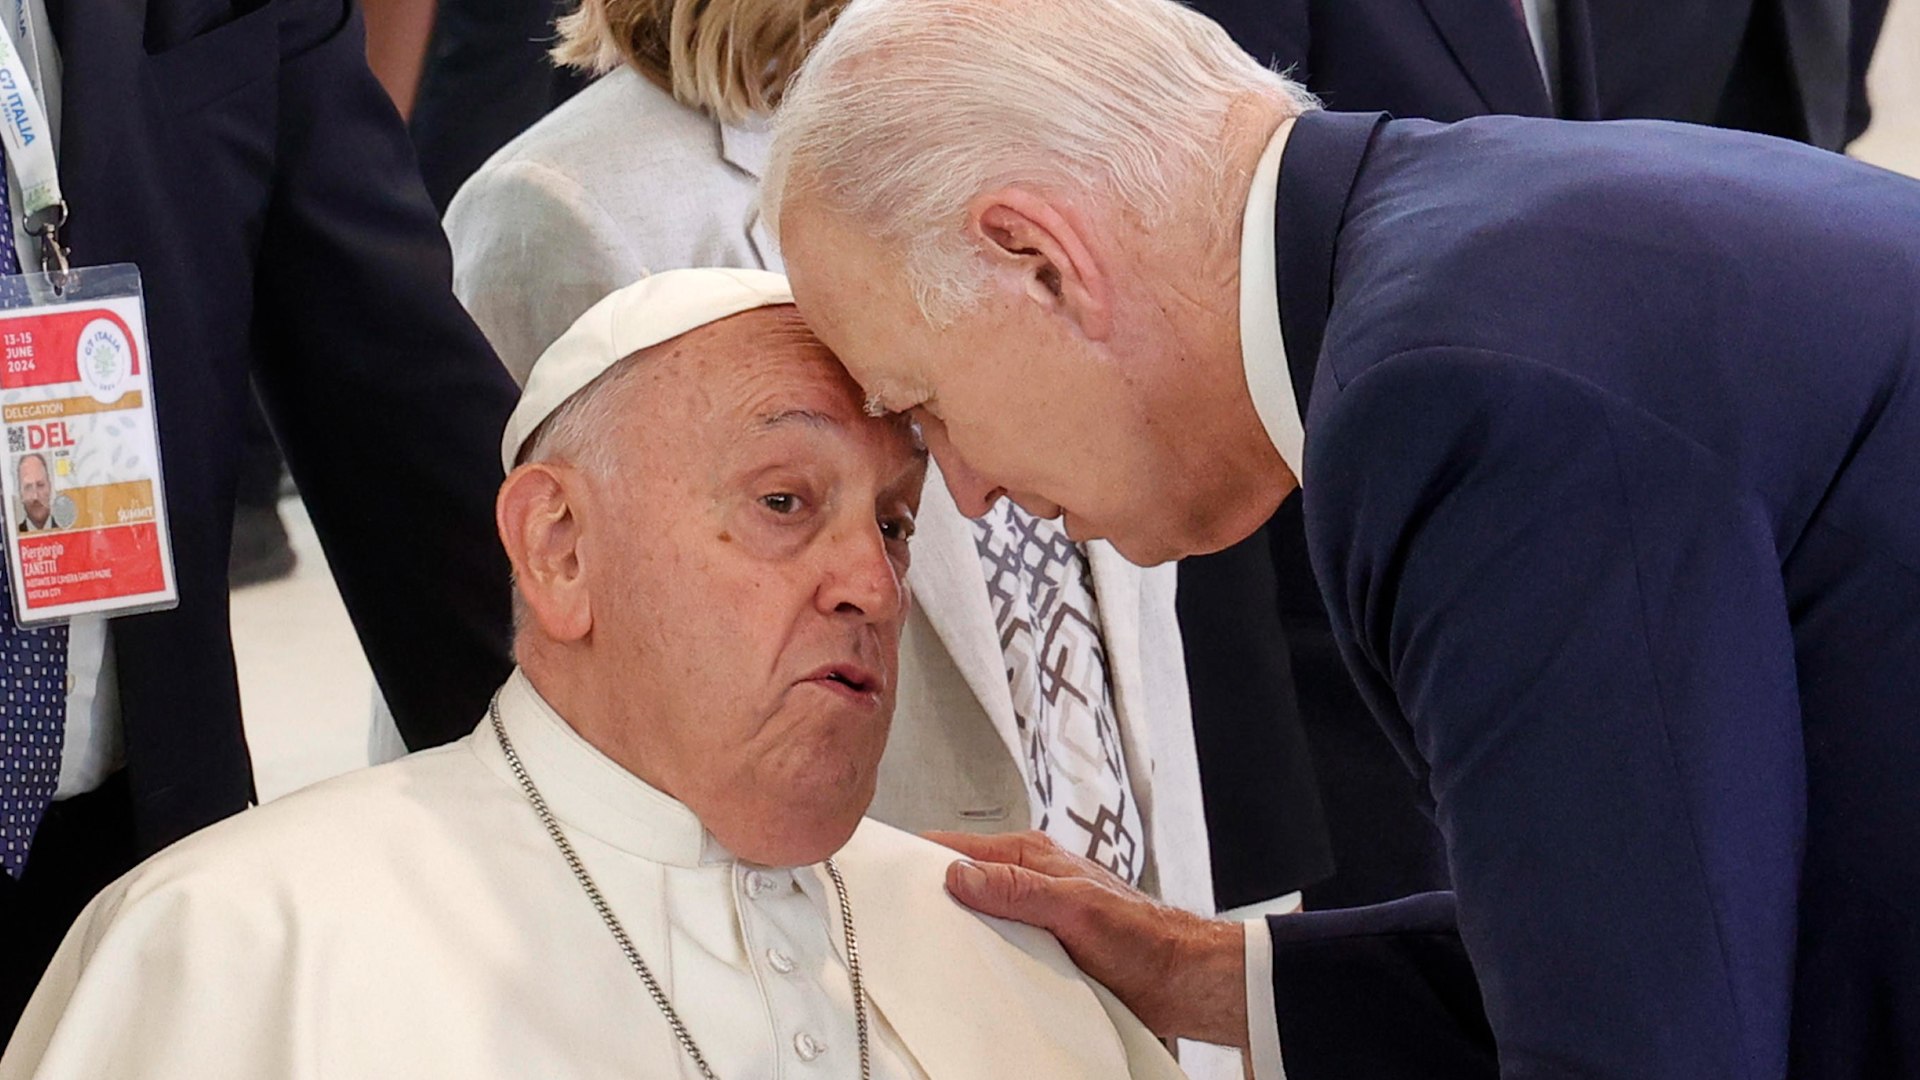 Biden apoya su frente sobre la del Papa Francisco en su visita al G7 en Italia